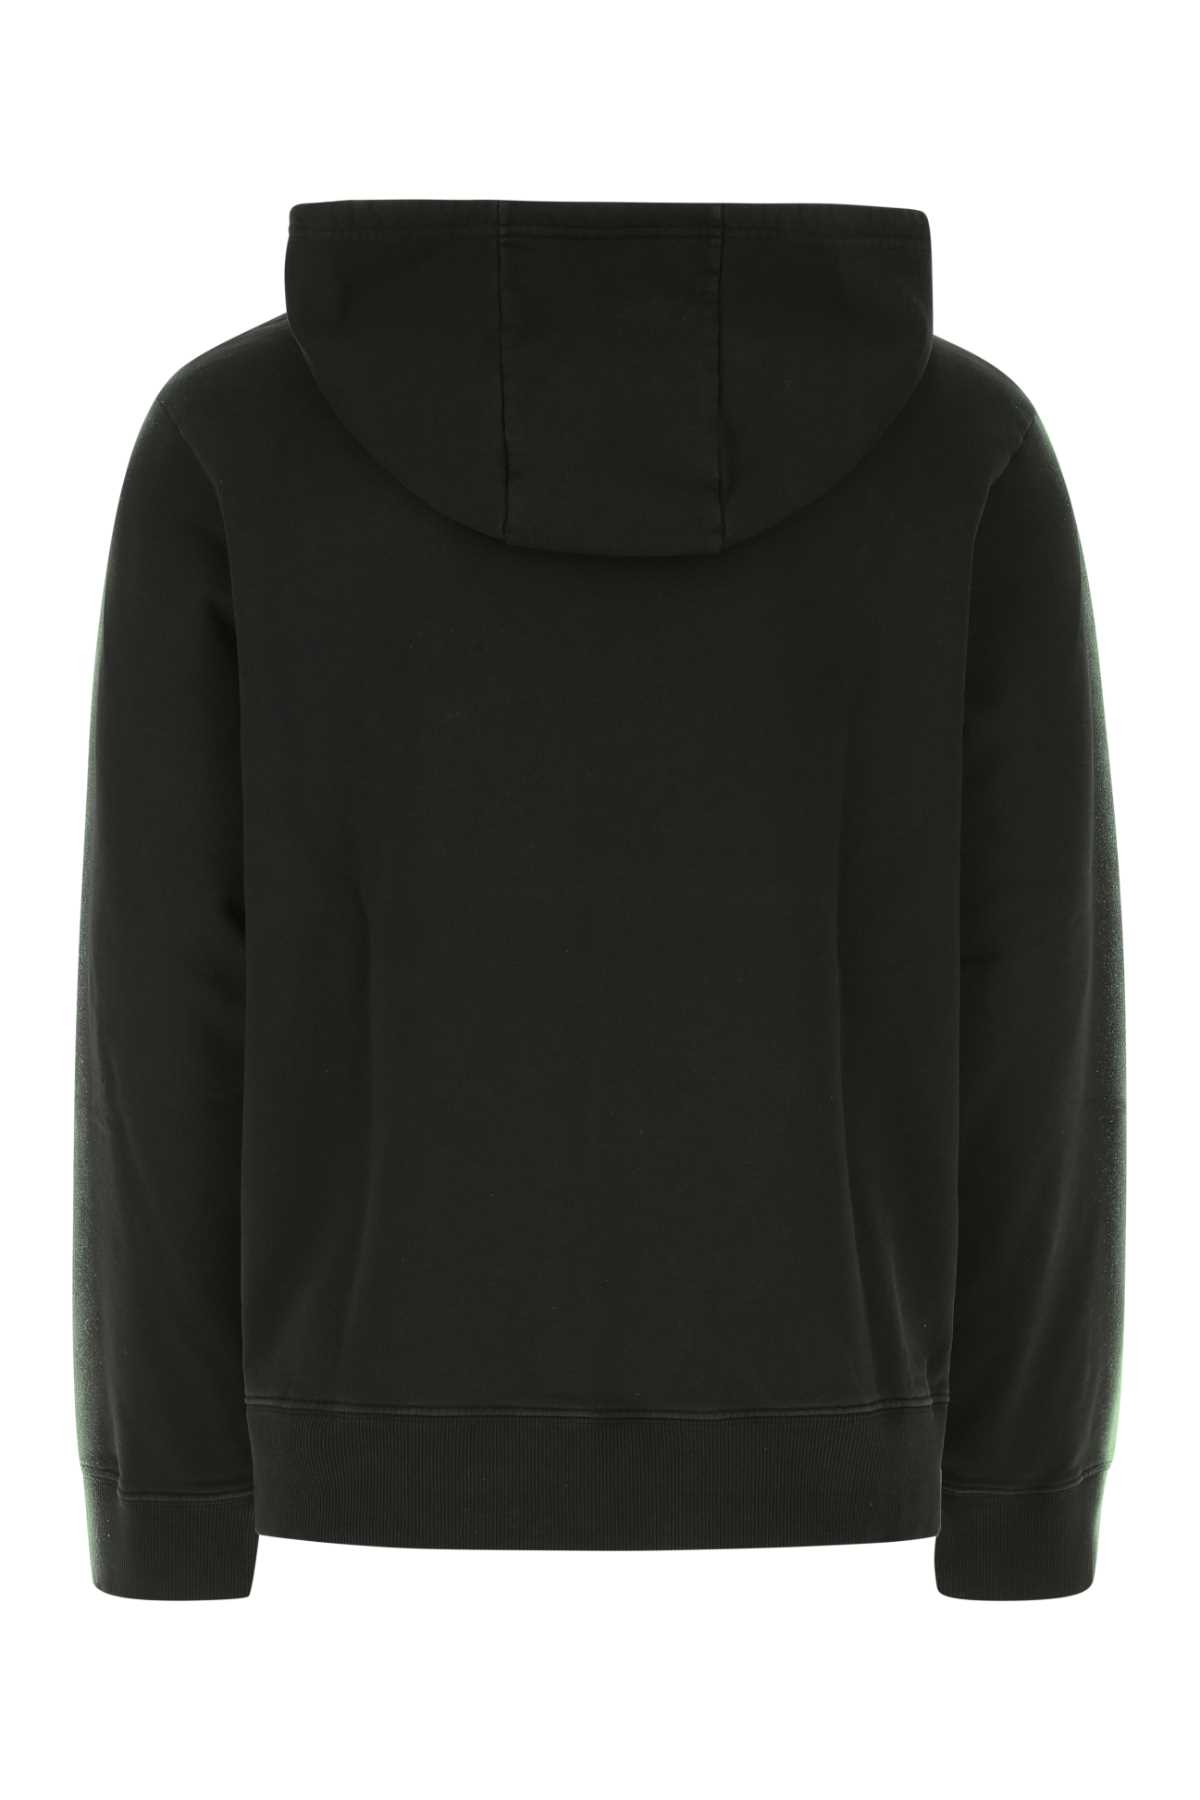 Koché Black Cotton Oversize Sweatshirt In 900